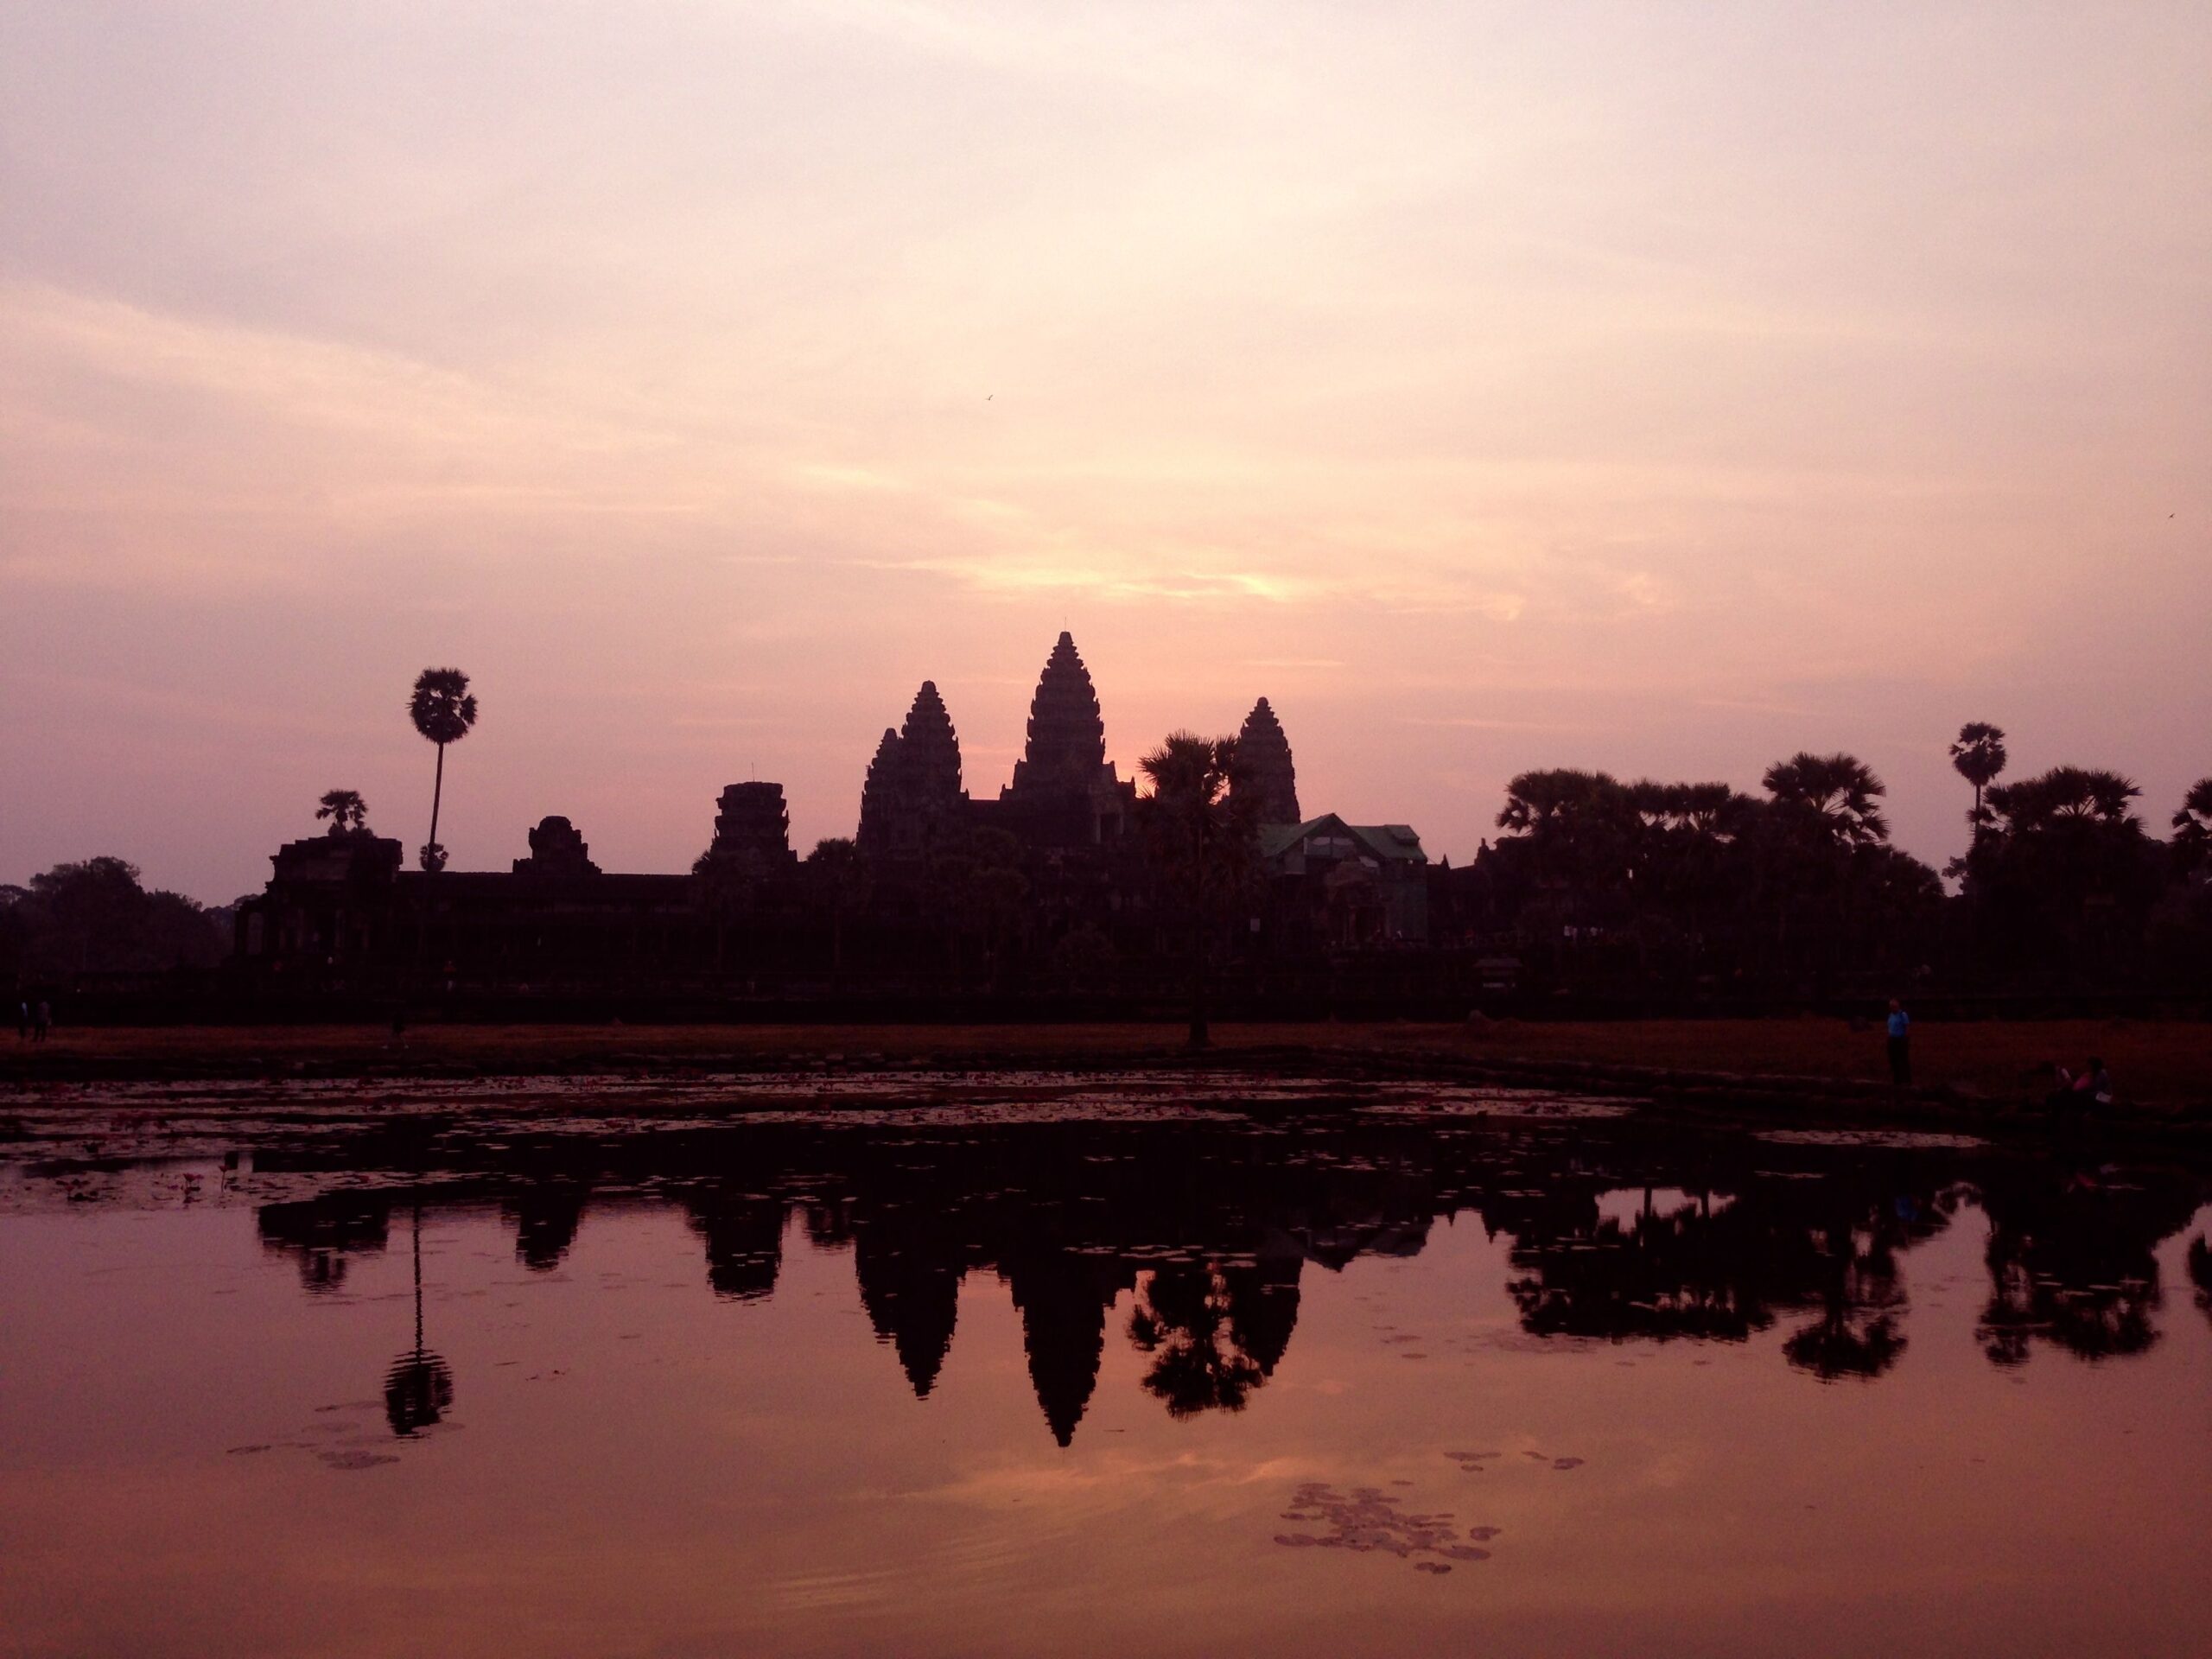 Cambogia in 7 giorni: itinerario di viaggio dall’Angkor Wat a Phnom Phen